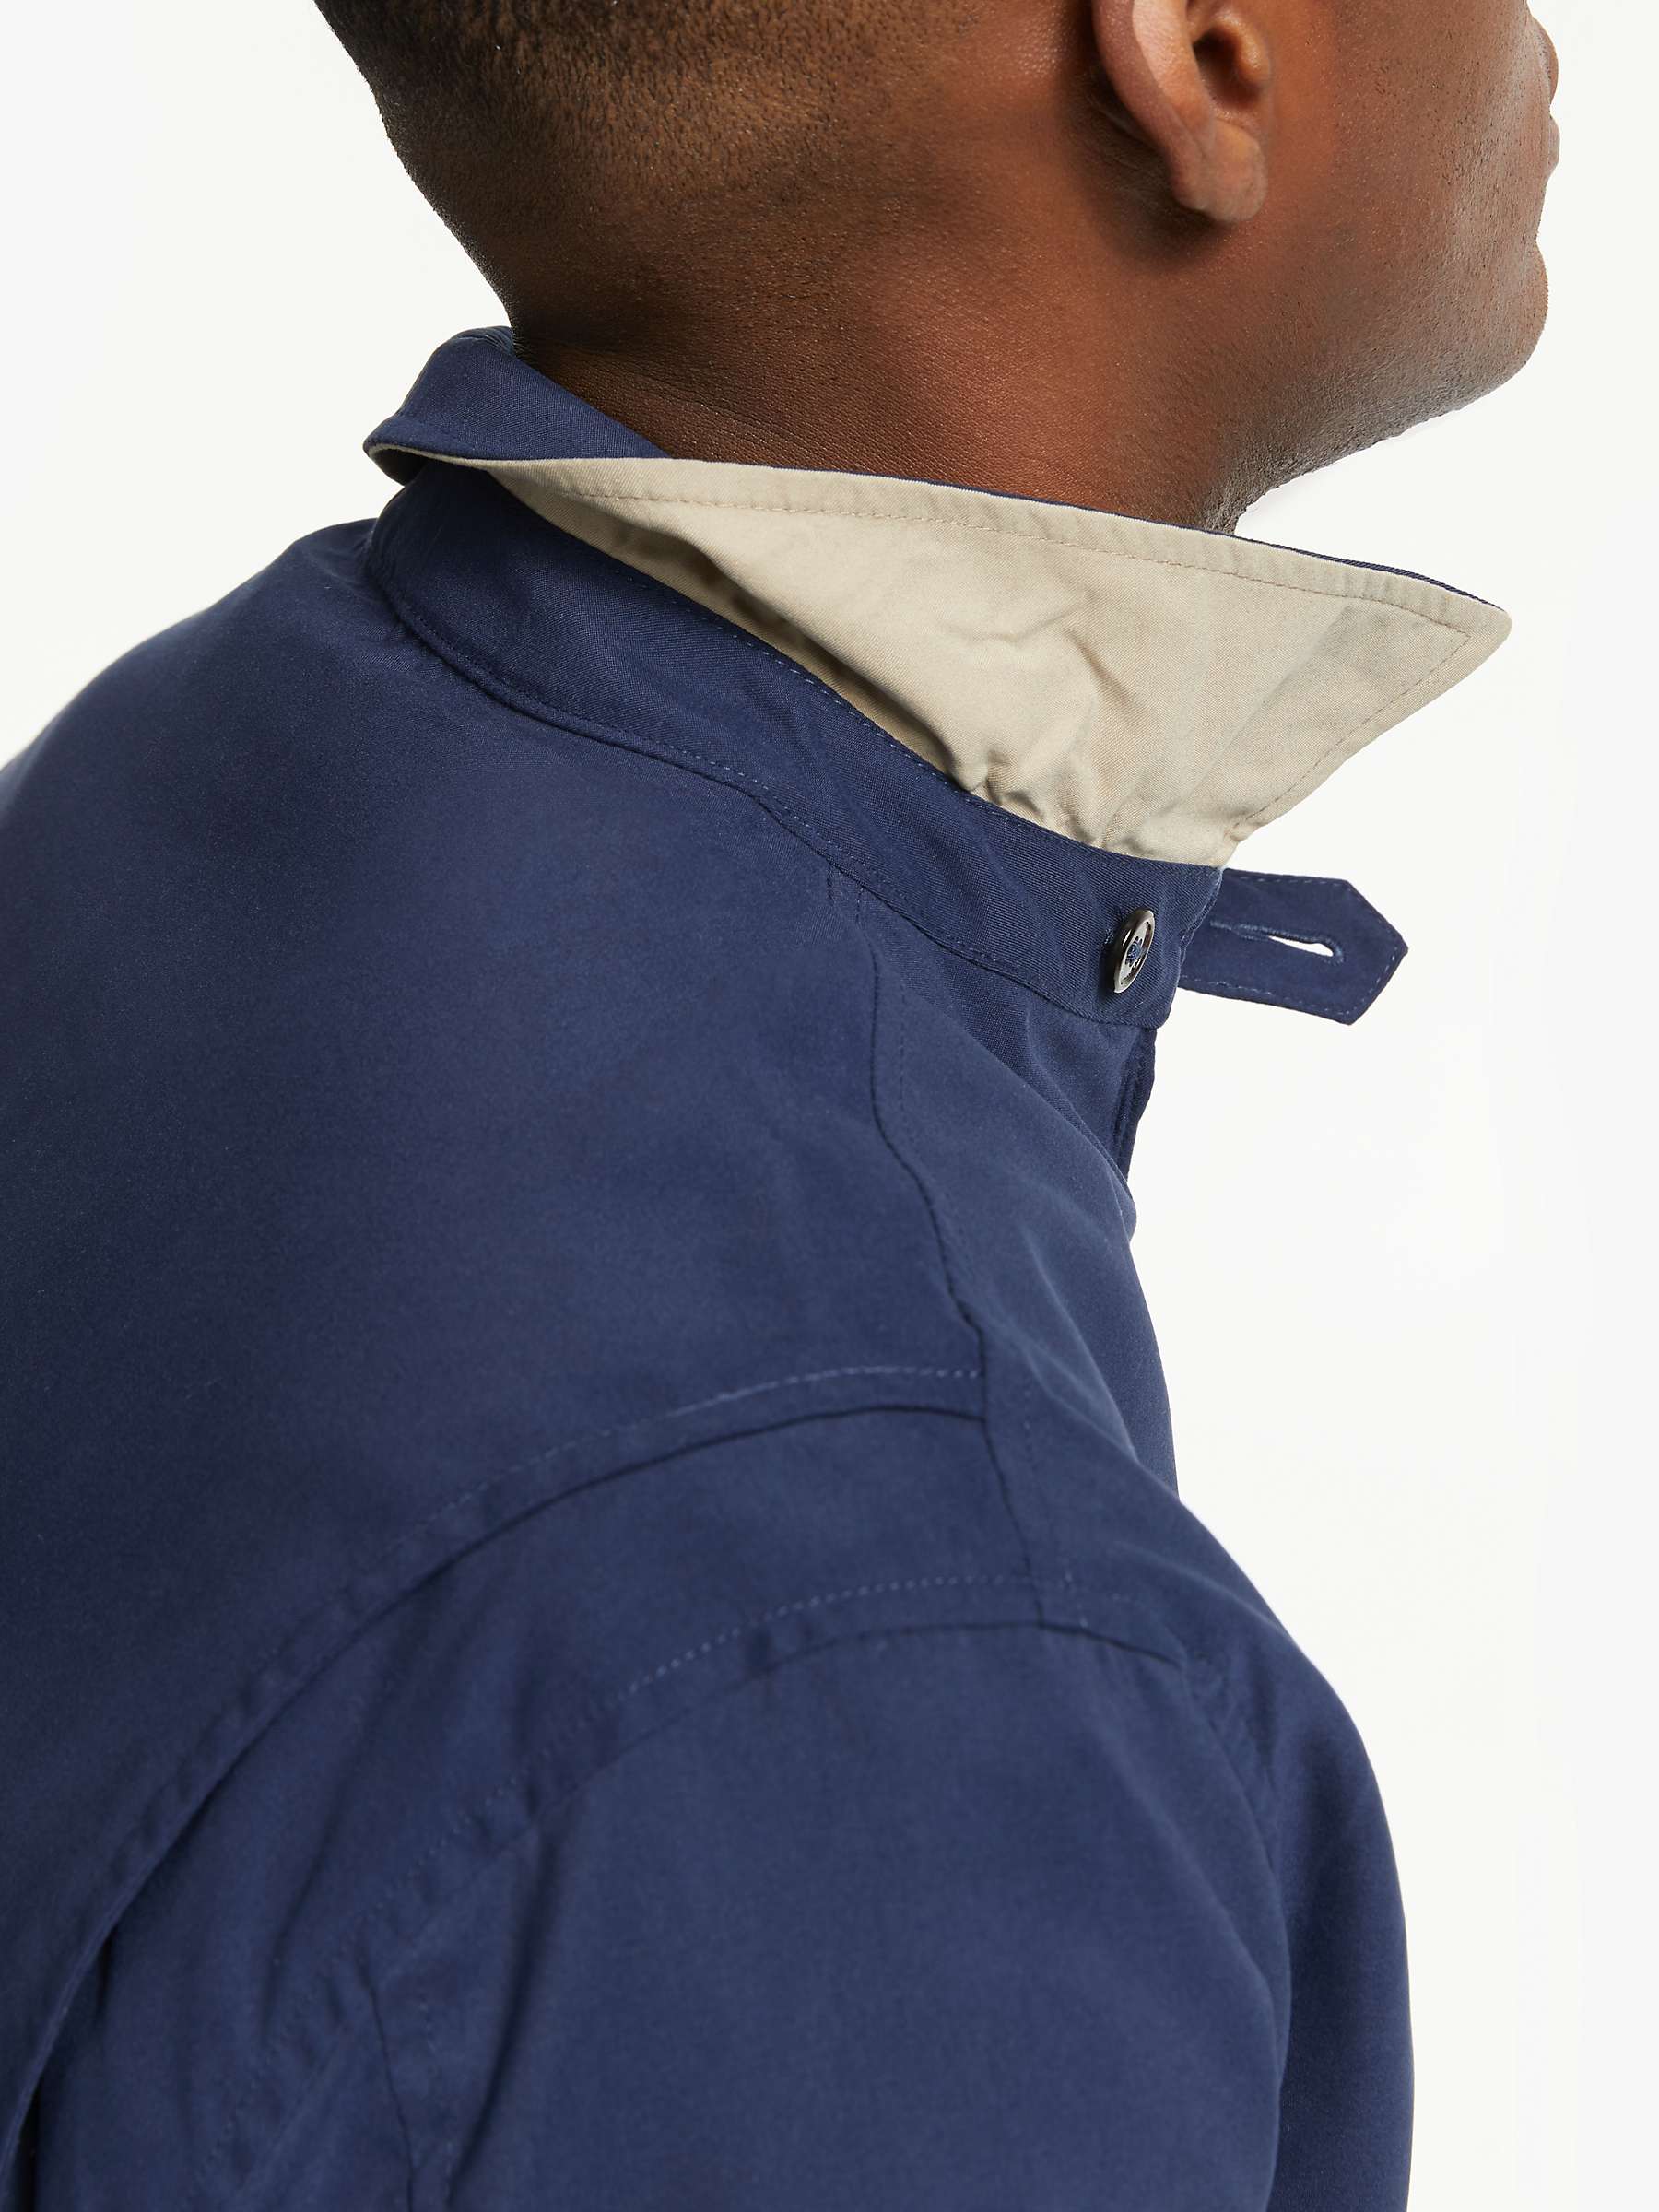 Buy Polo Ralph Lauren Bi-Swing Water-Repellent Windbreaker Jacket Online at johnlewis.com